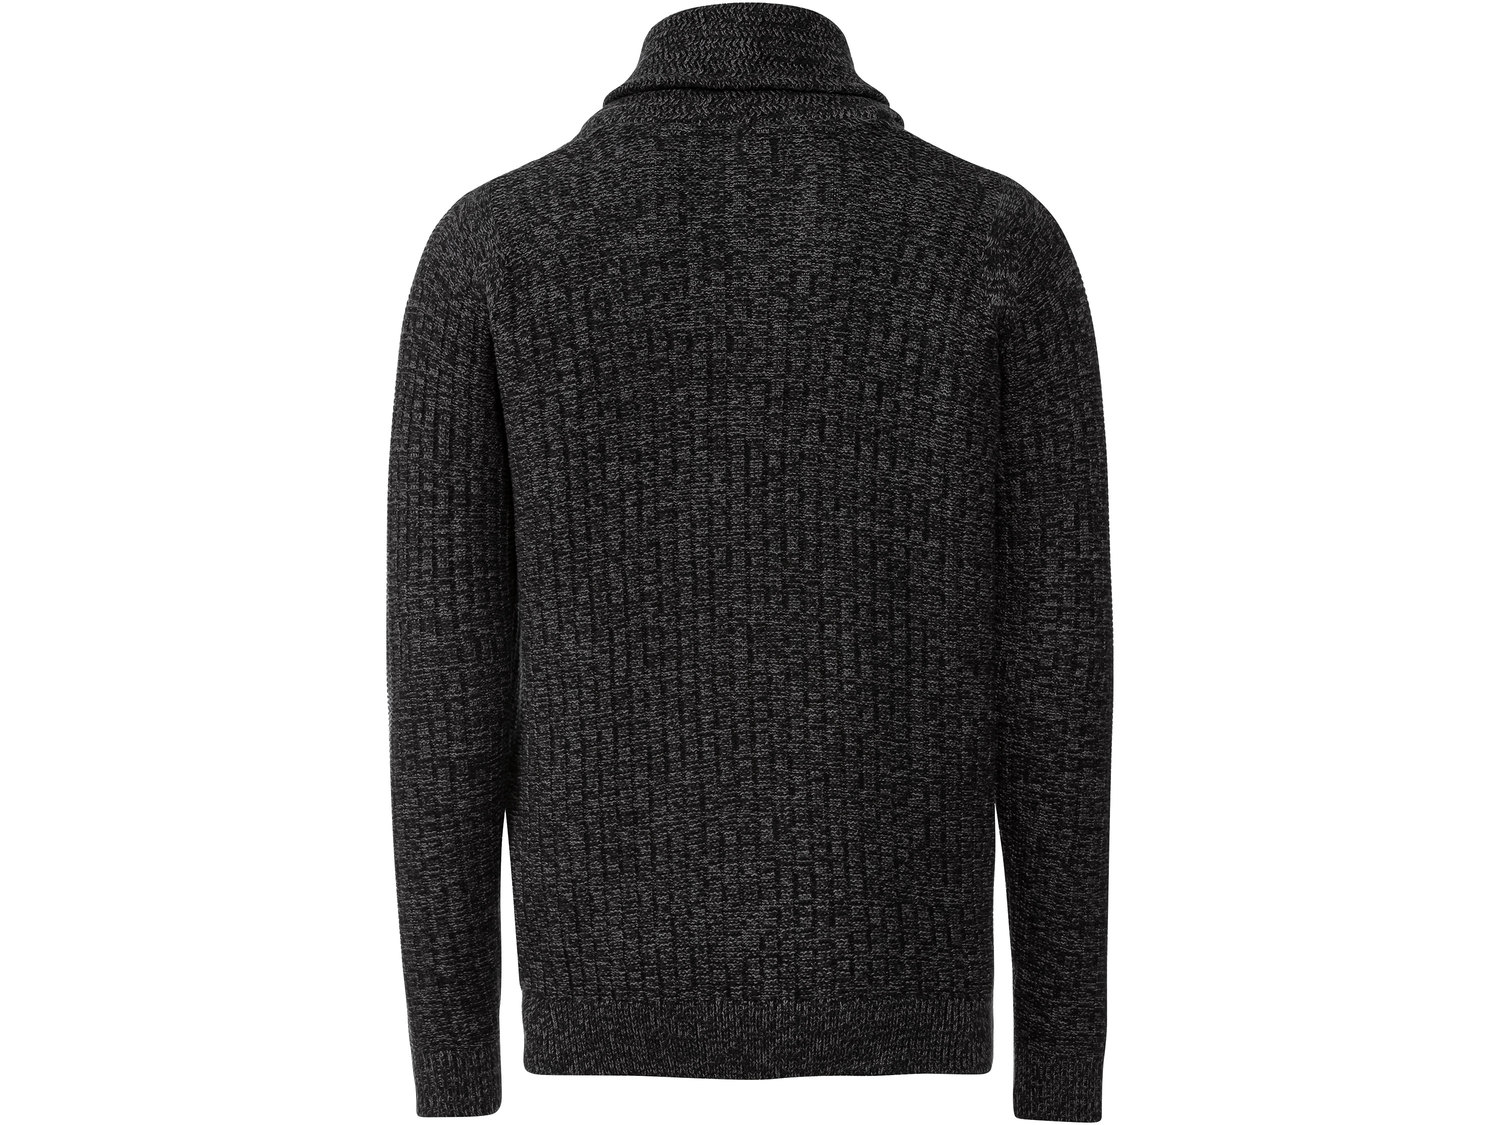 Sweter bawełniany Livergy, cena 44,99 PLN 
- 100% bawełny
- kołnierz szalowy ...